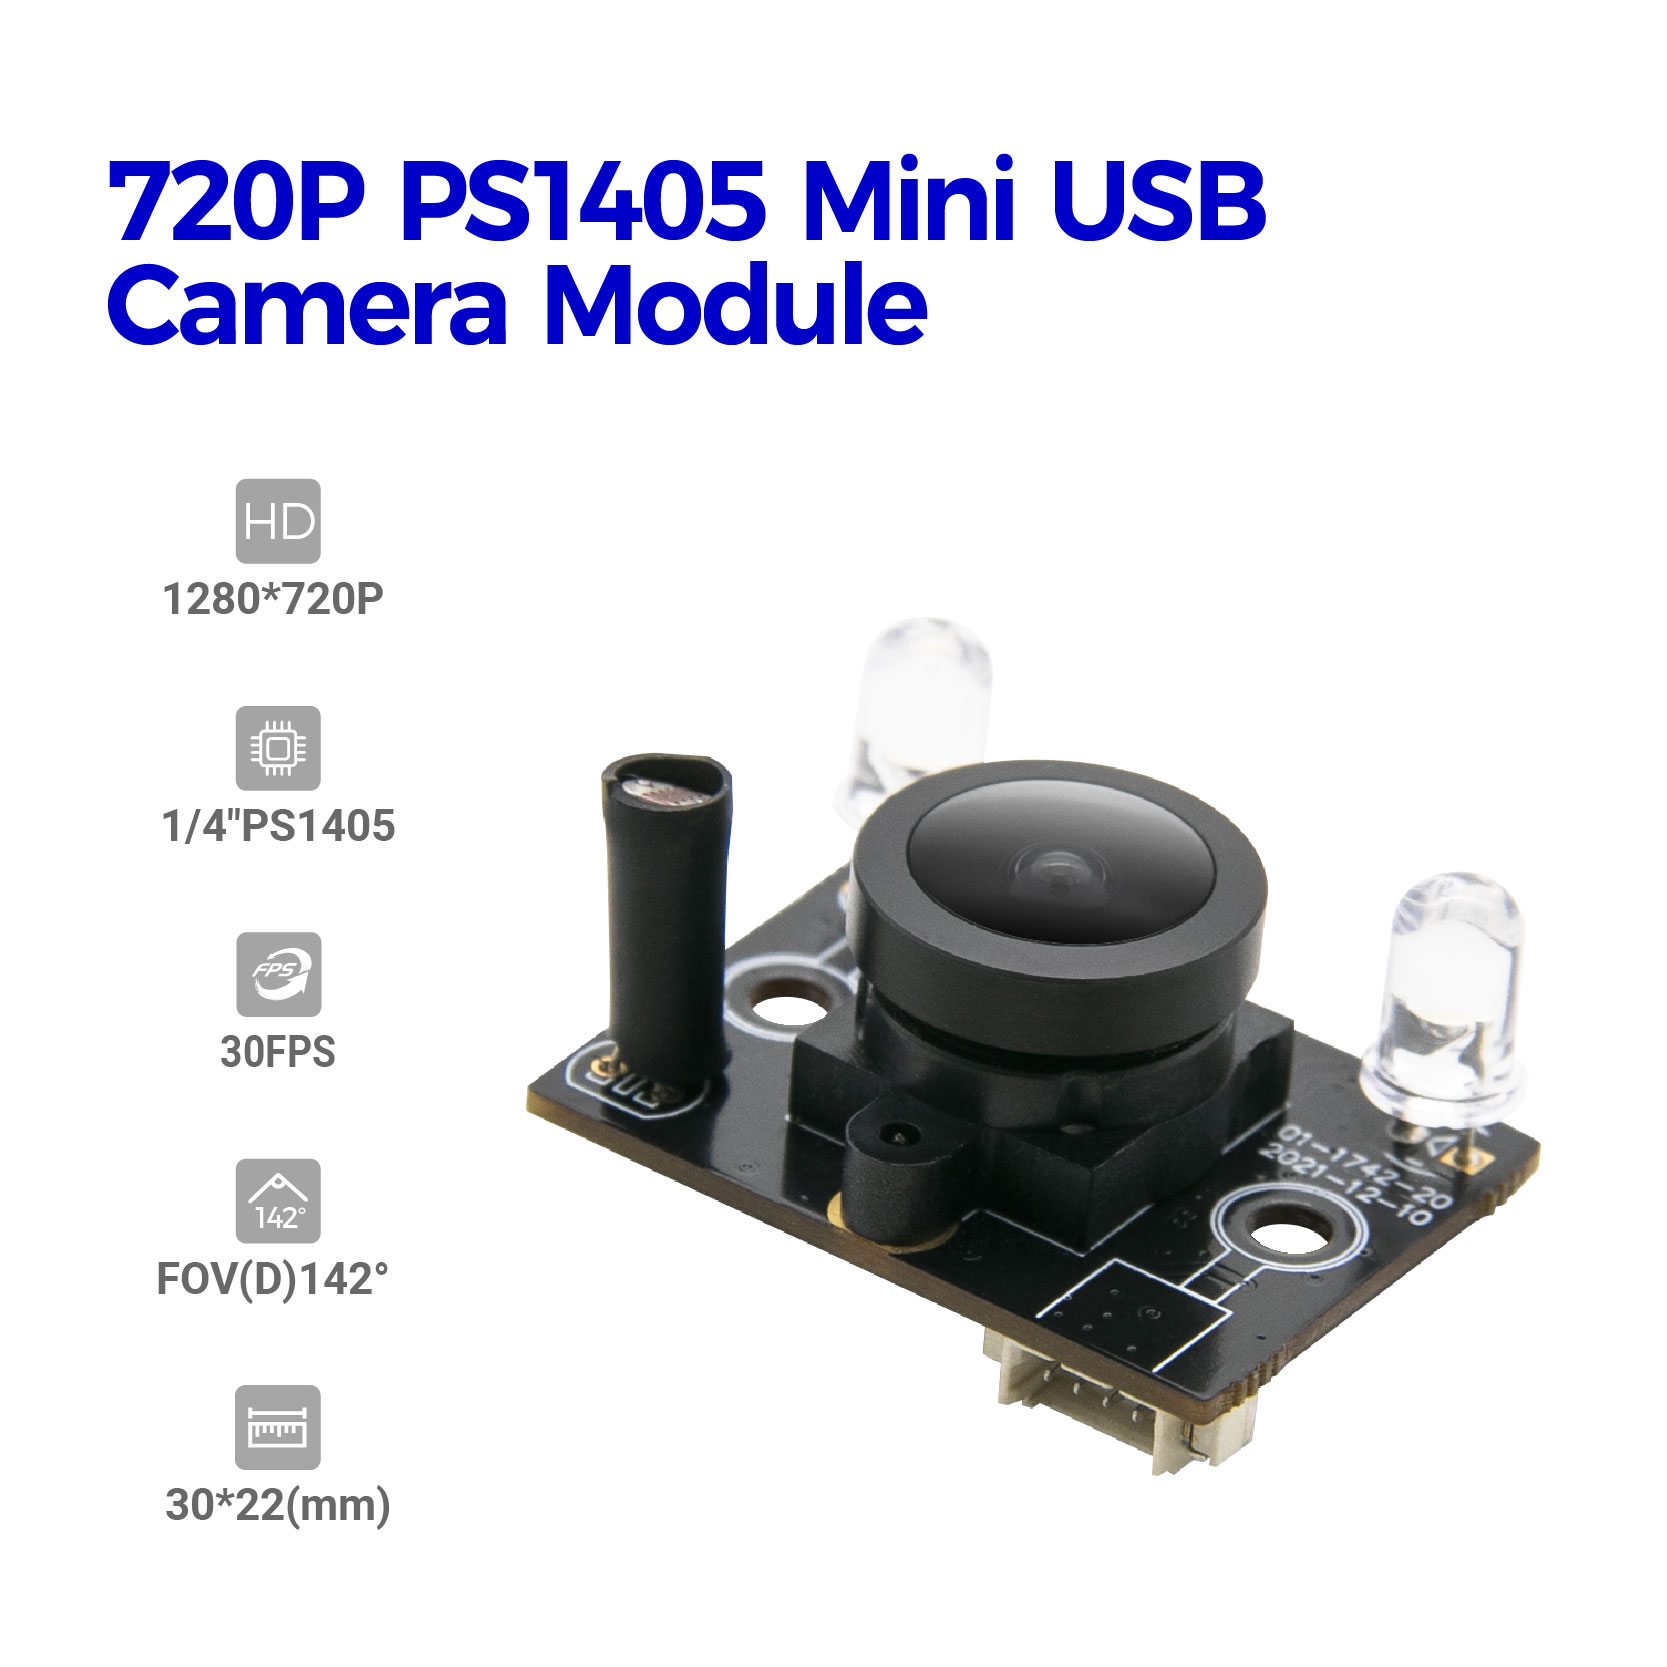 720P SP1405 Kamera-modulu errentagarria